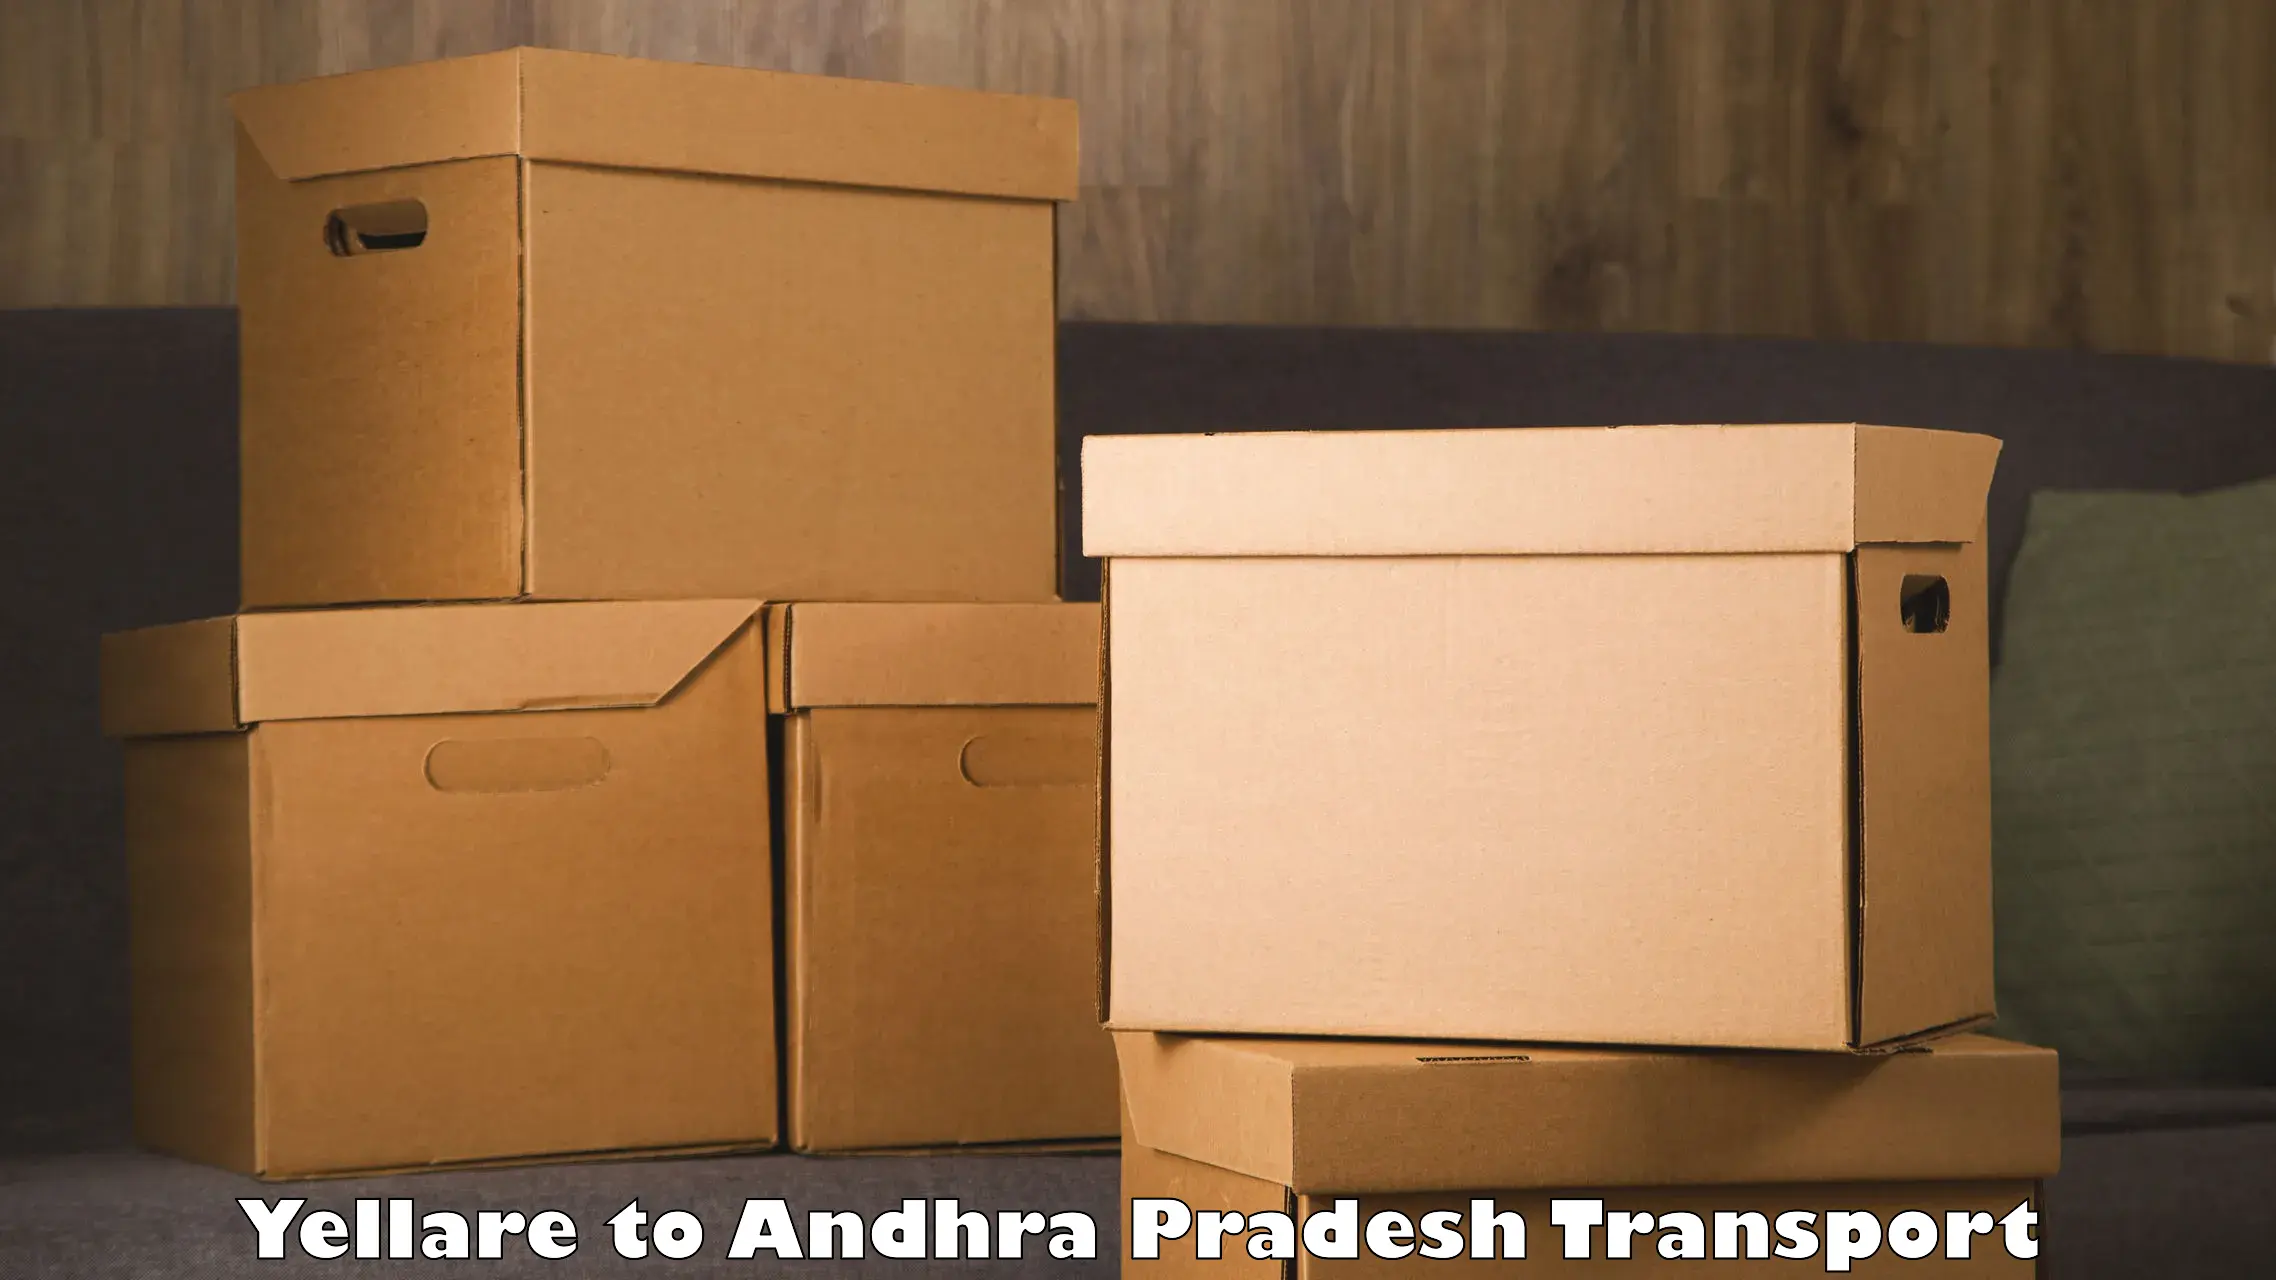 Interstate goods transport Yellare to NIT Andhra Pradesh